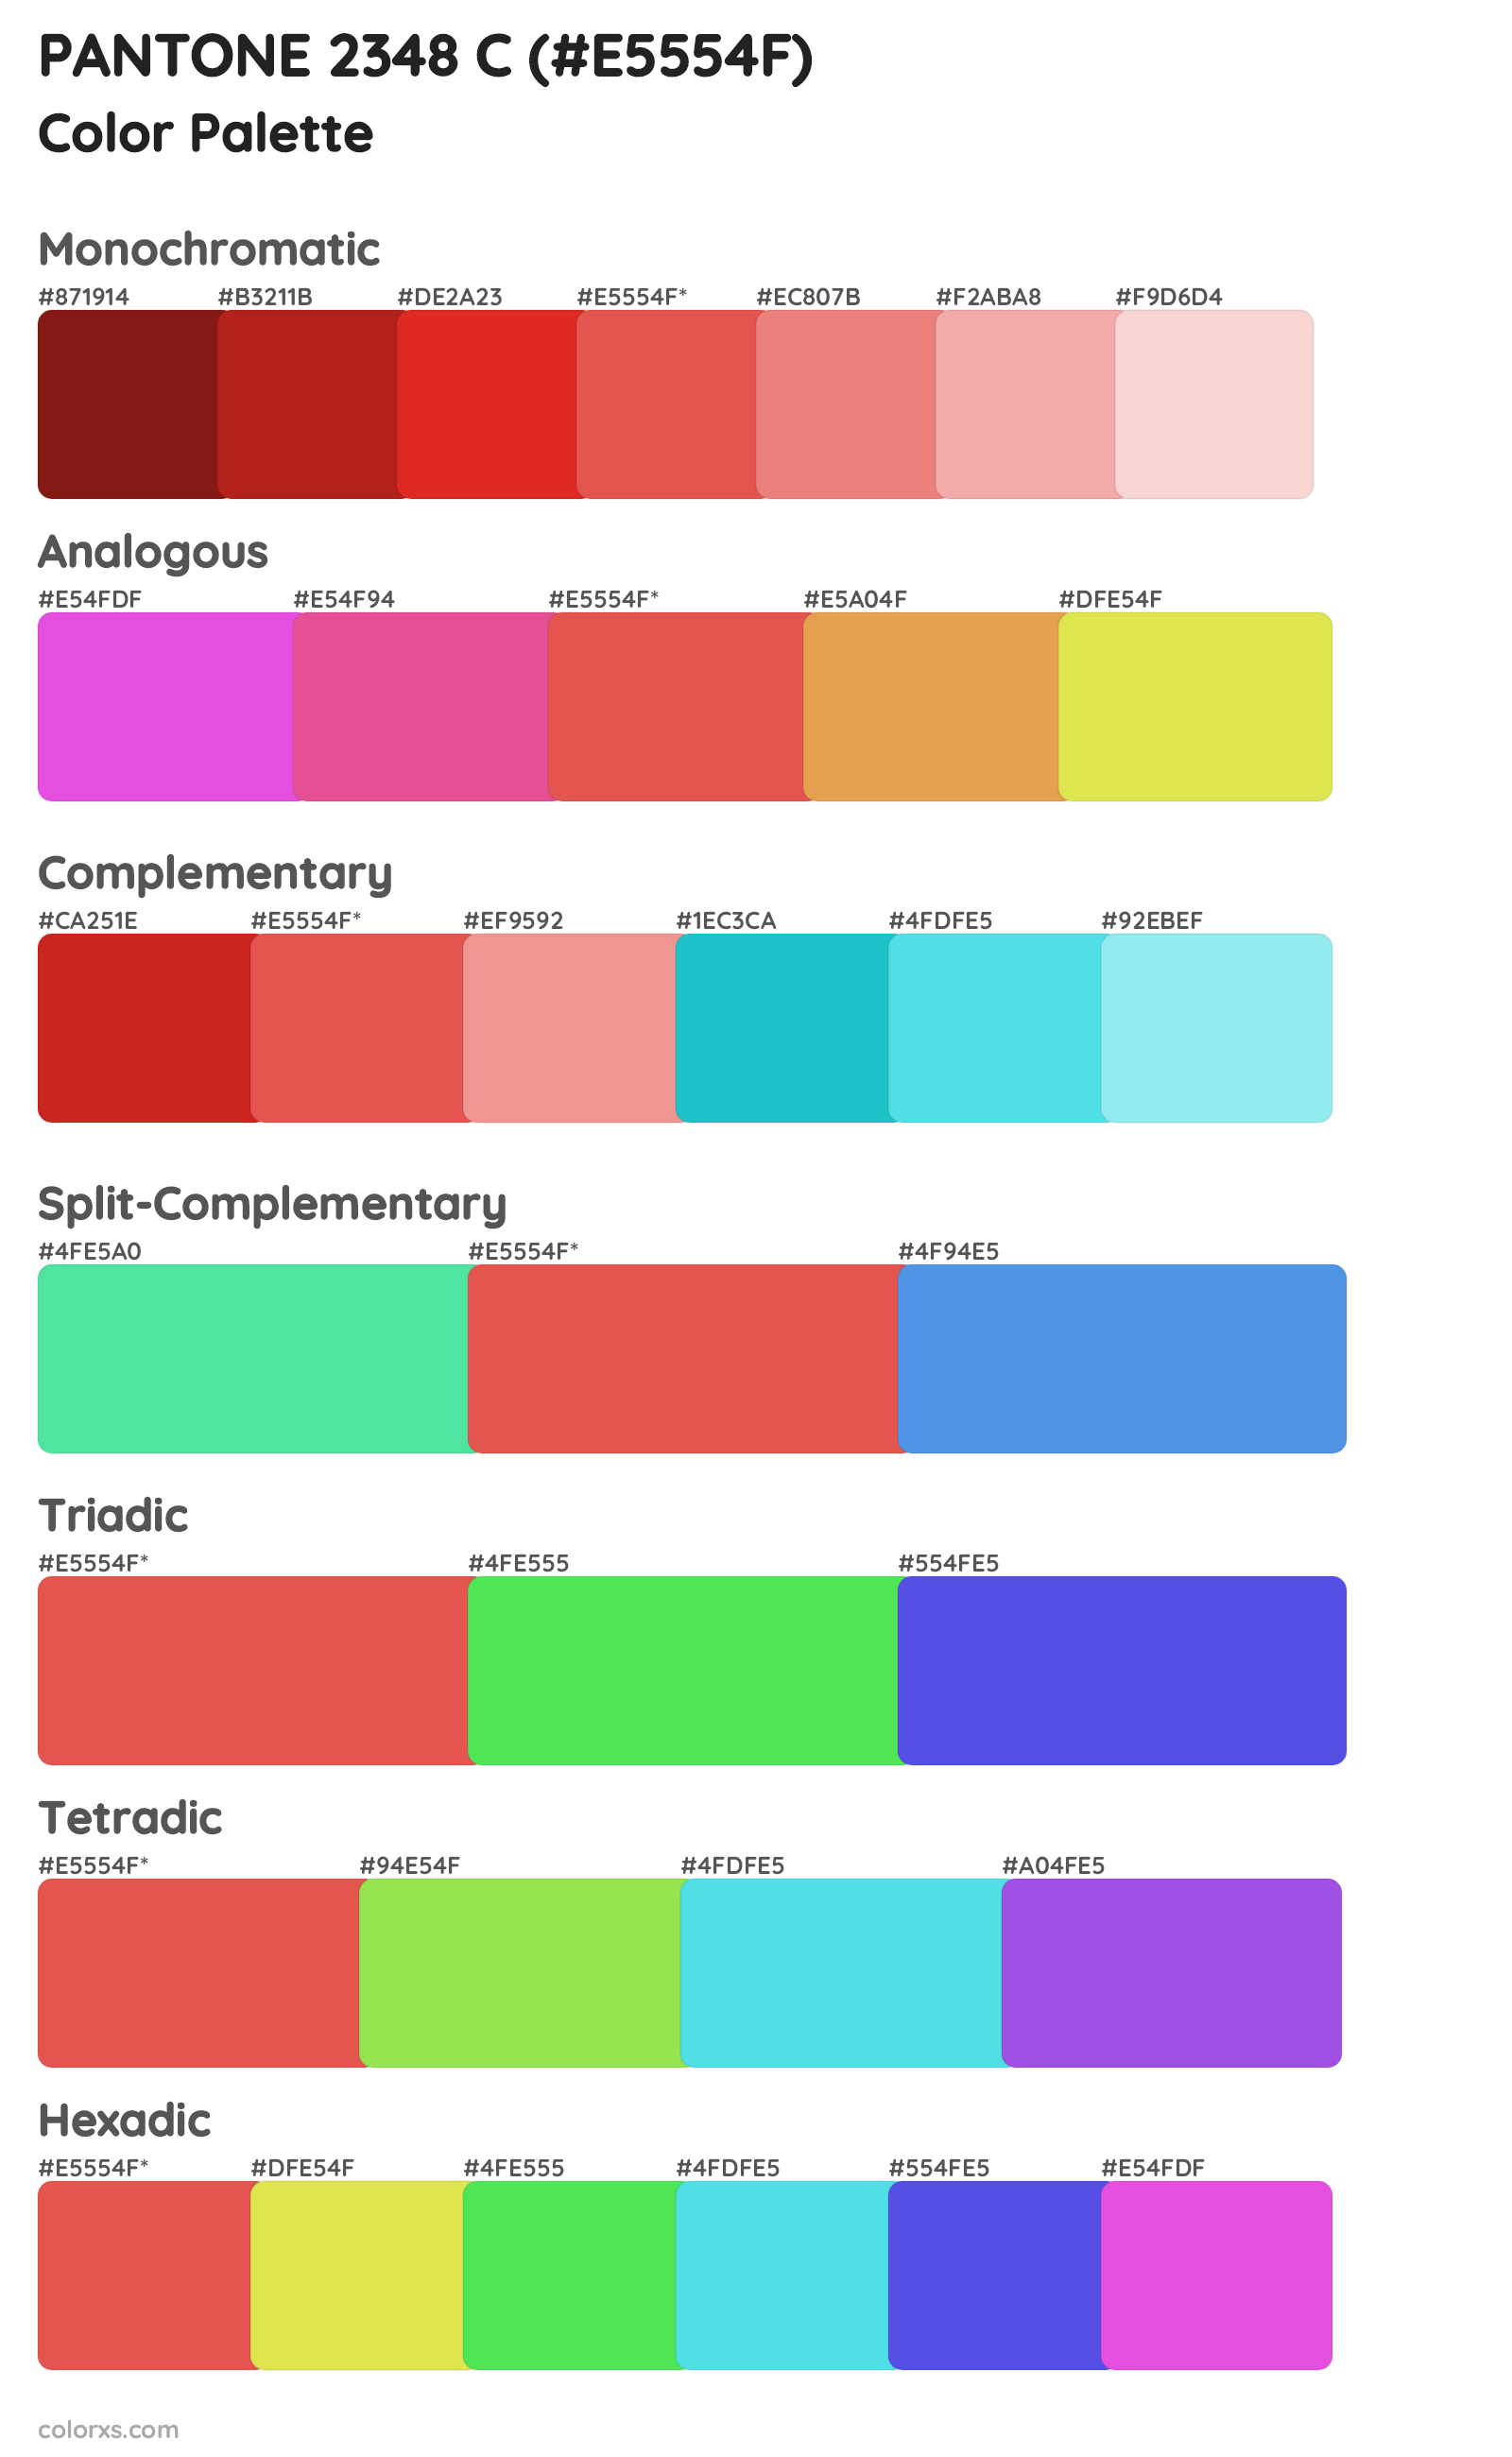 PANTONE 2348 C Color Scheme Palettes